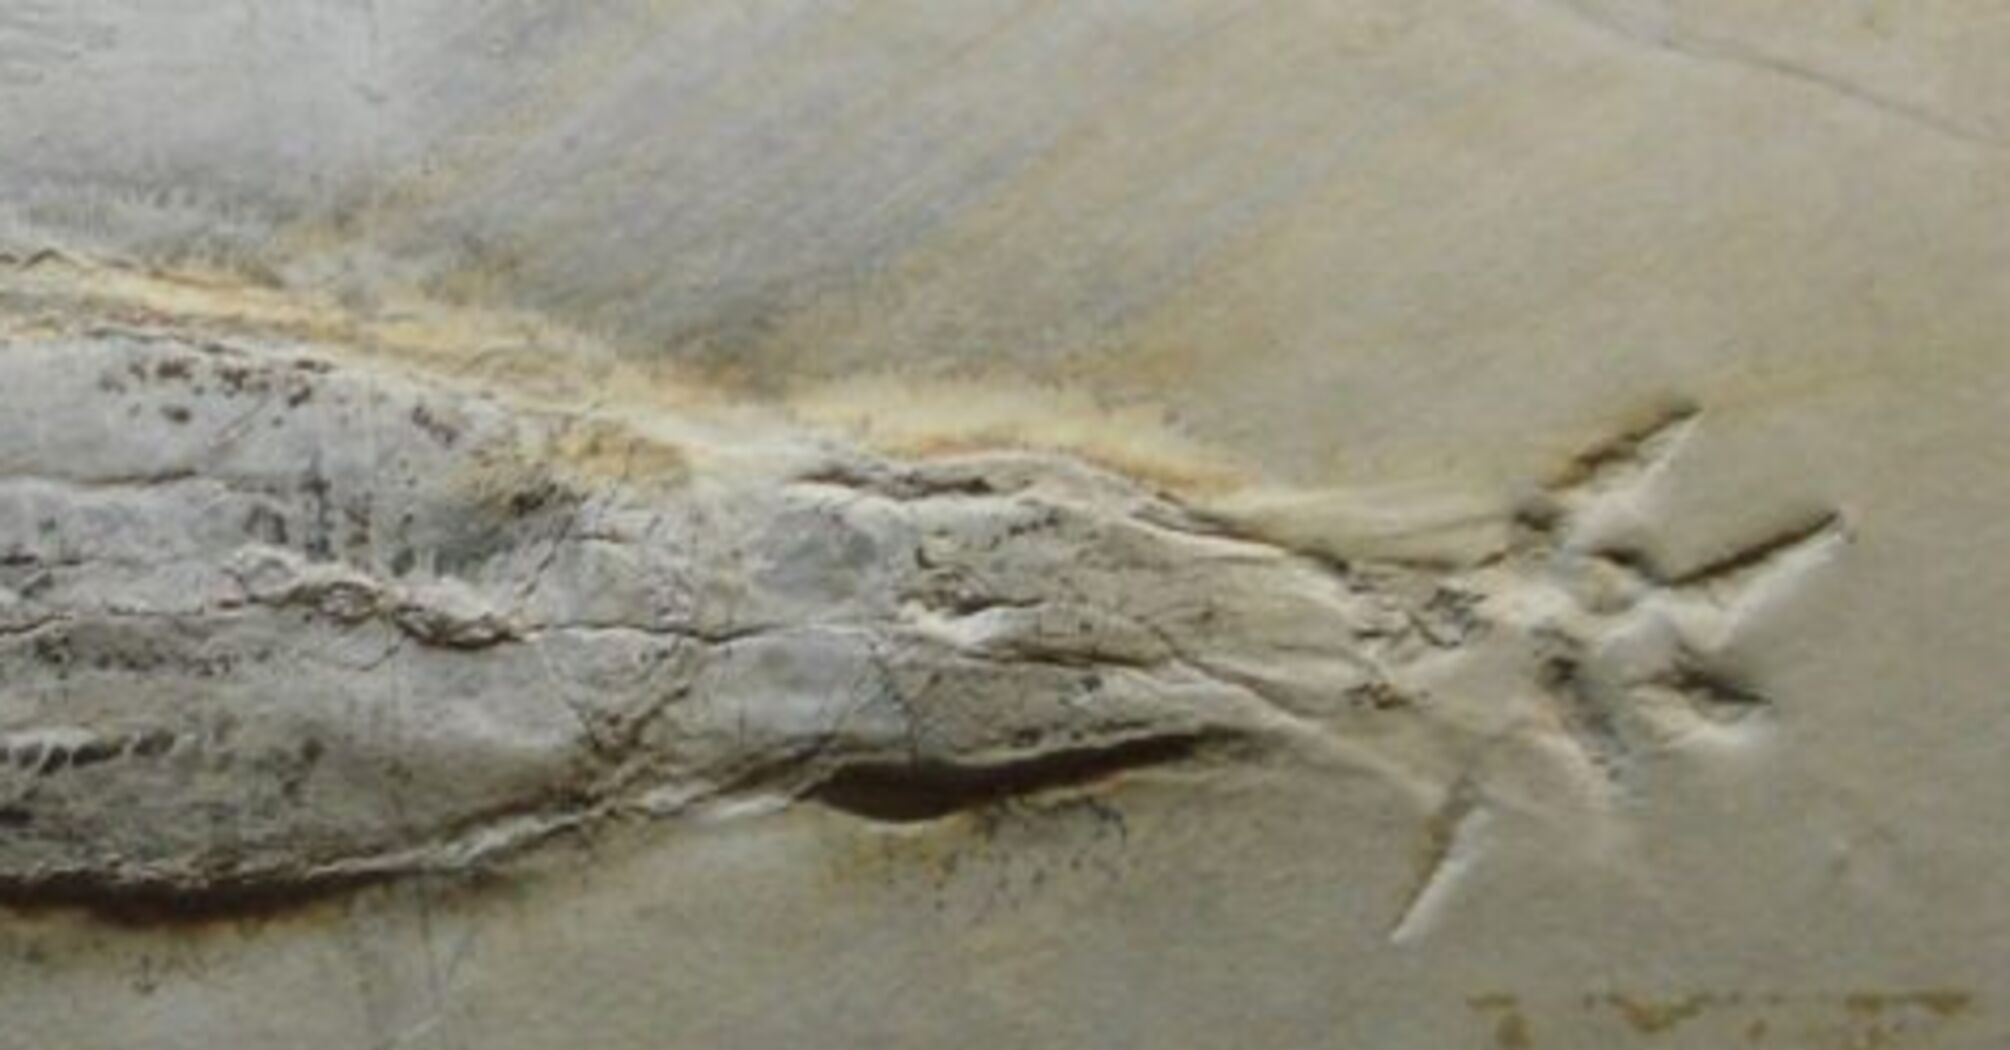 Скам'янілість кальмара-вампіра зі здобиччю знайшли у Люксембурзі: жив на Землі 180 млн років тому (фото)